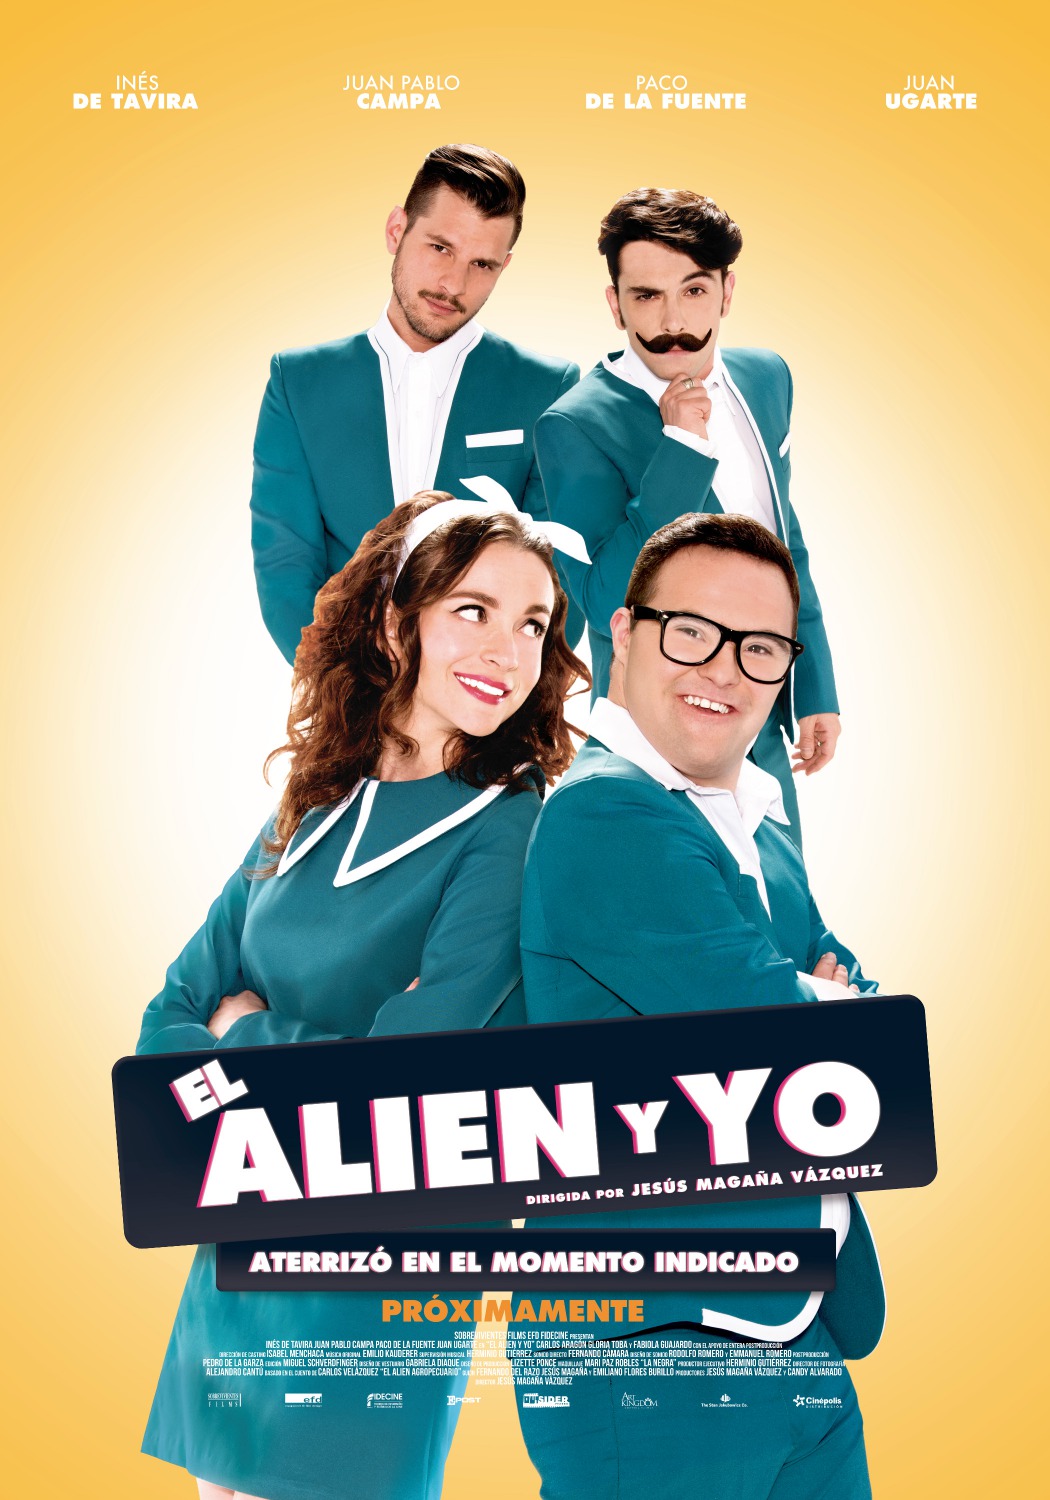 Extra Large Movie Poster Image for El Alien y yo 